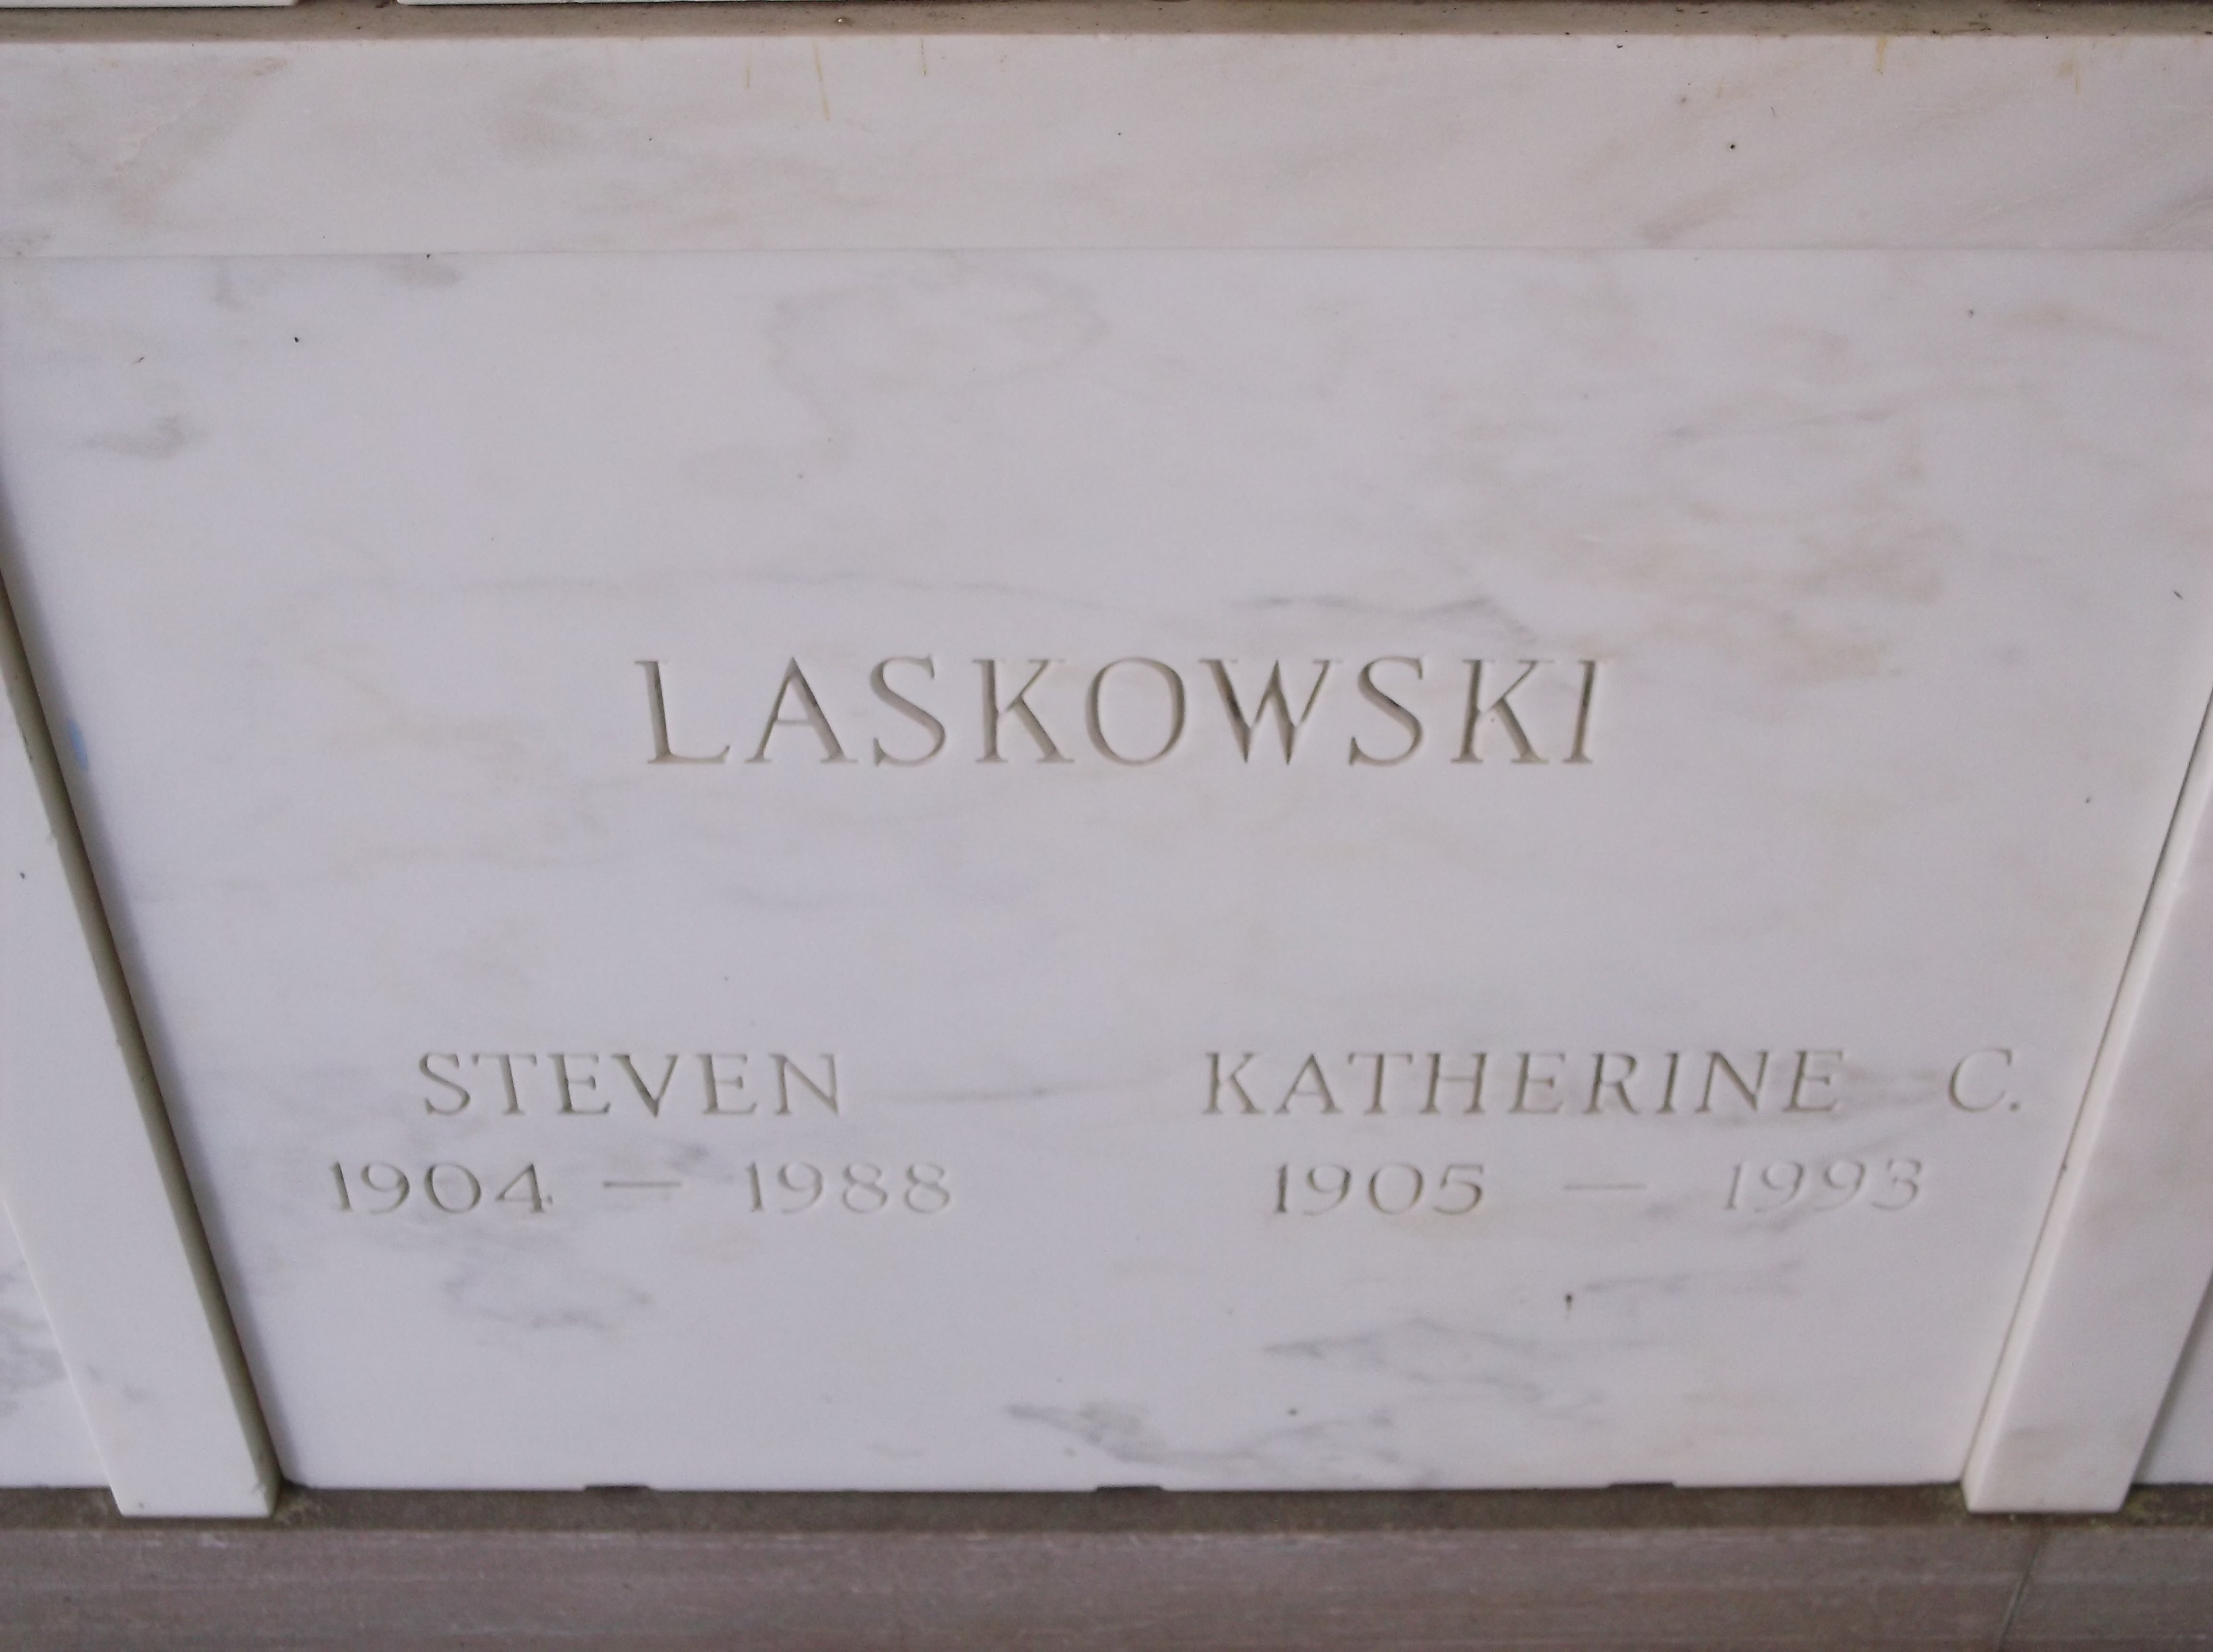 Steven Laskowski